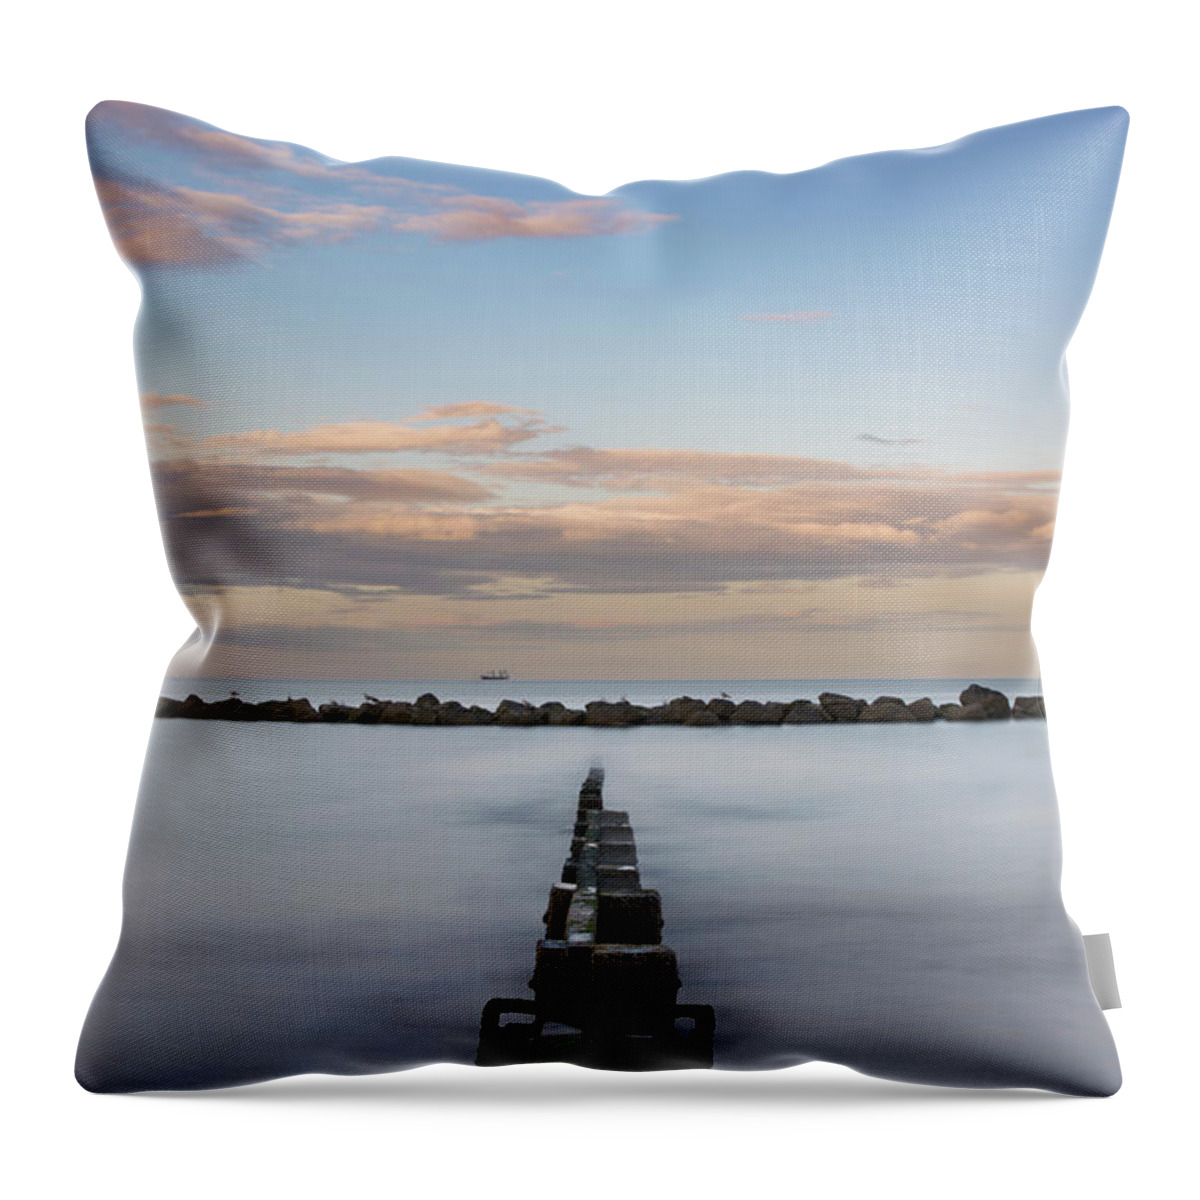 Aberdeen Throw Pillow featuring the photograph Oasis - Aberdeen Beach by Veli Bariskan